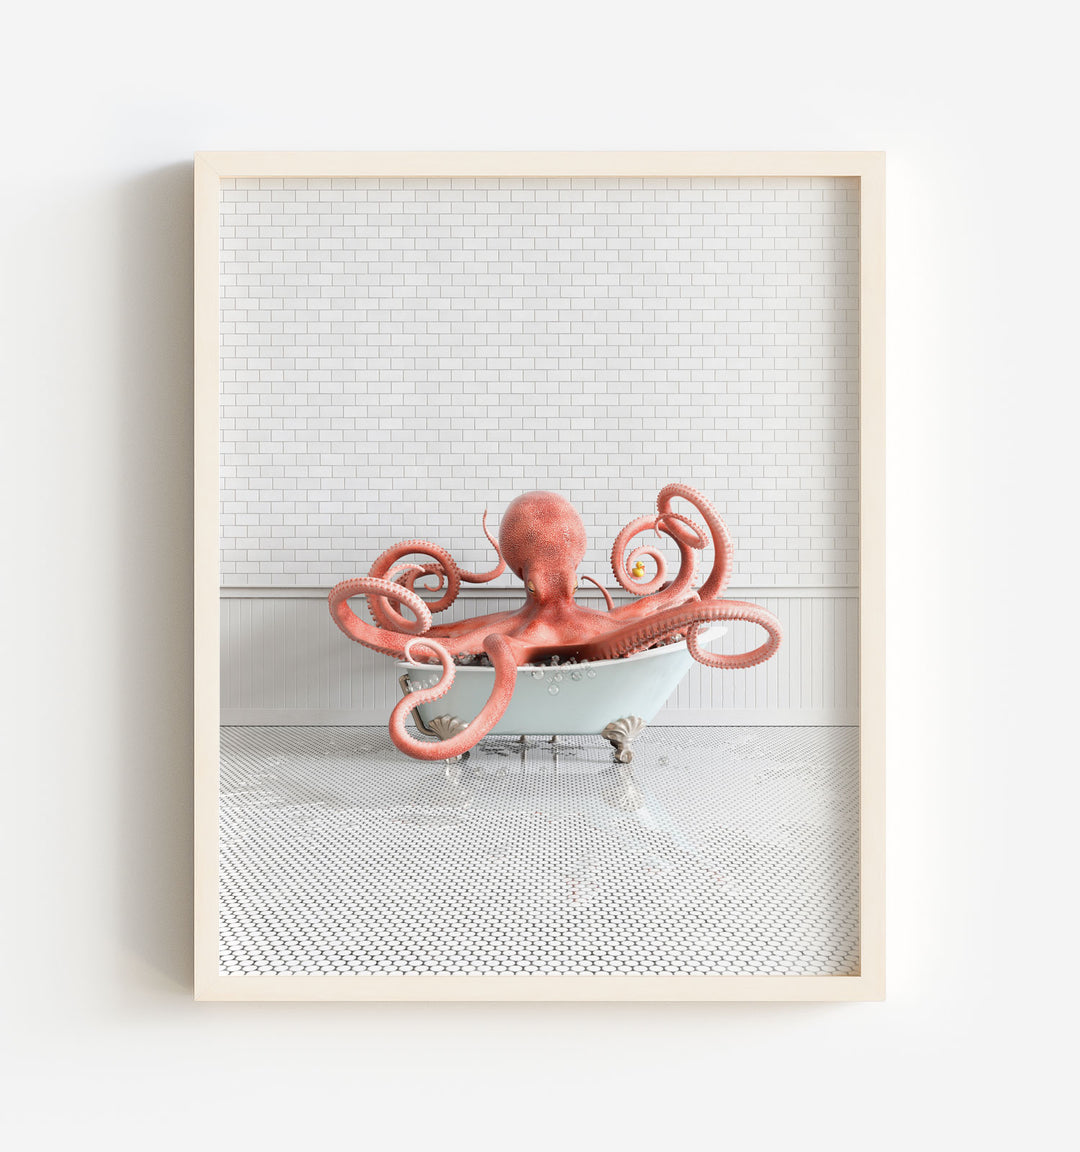 Octopus in Blue Bathtub